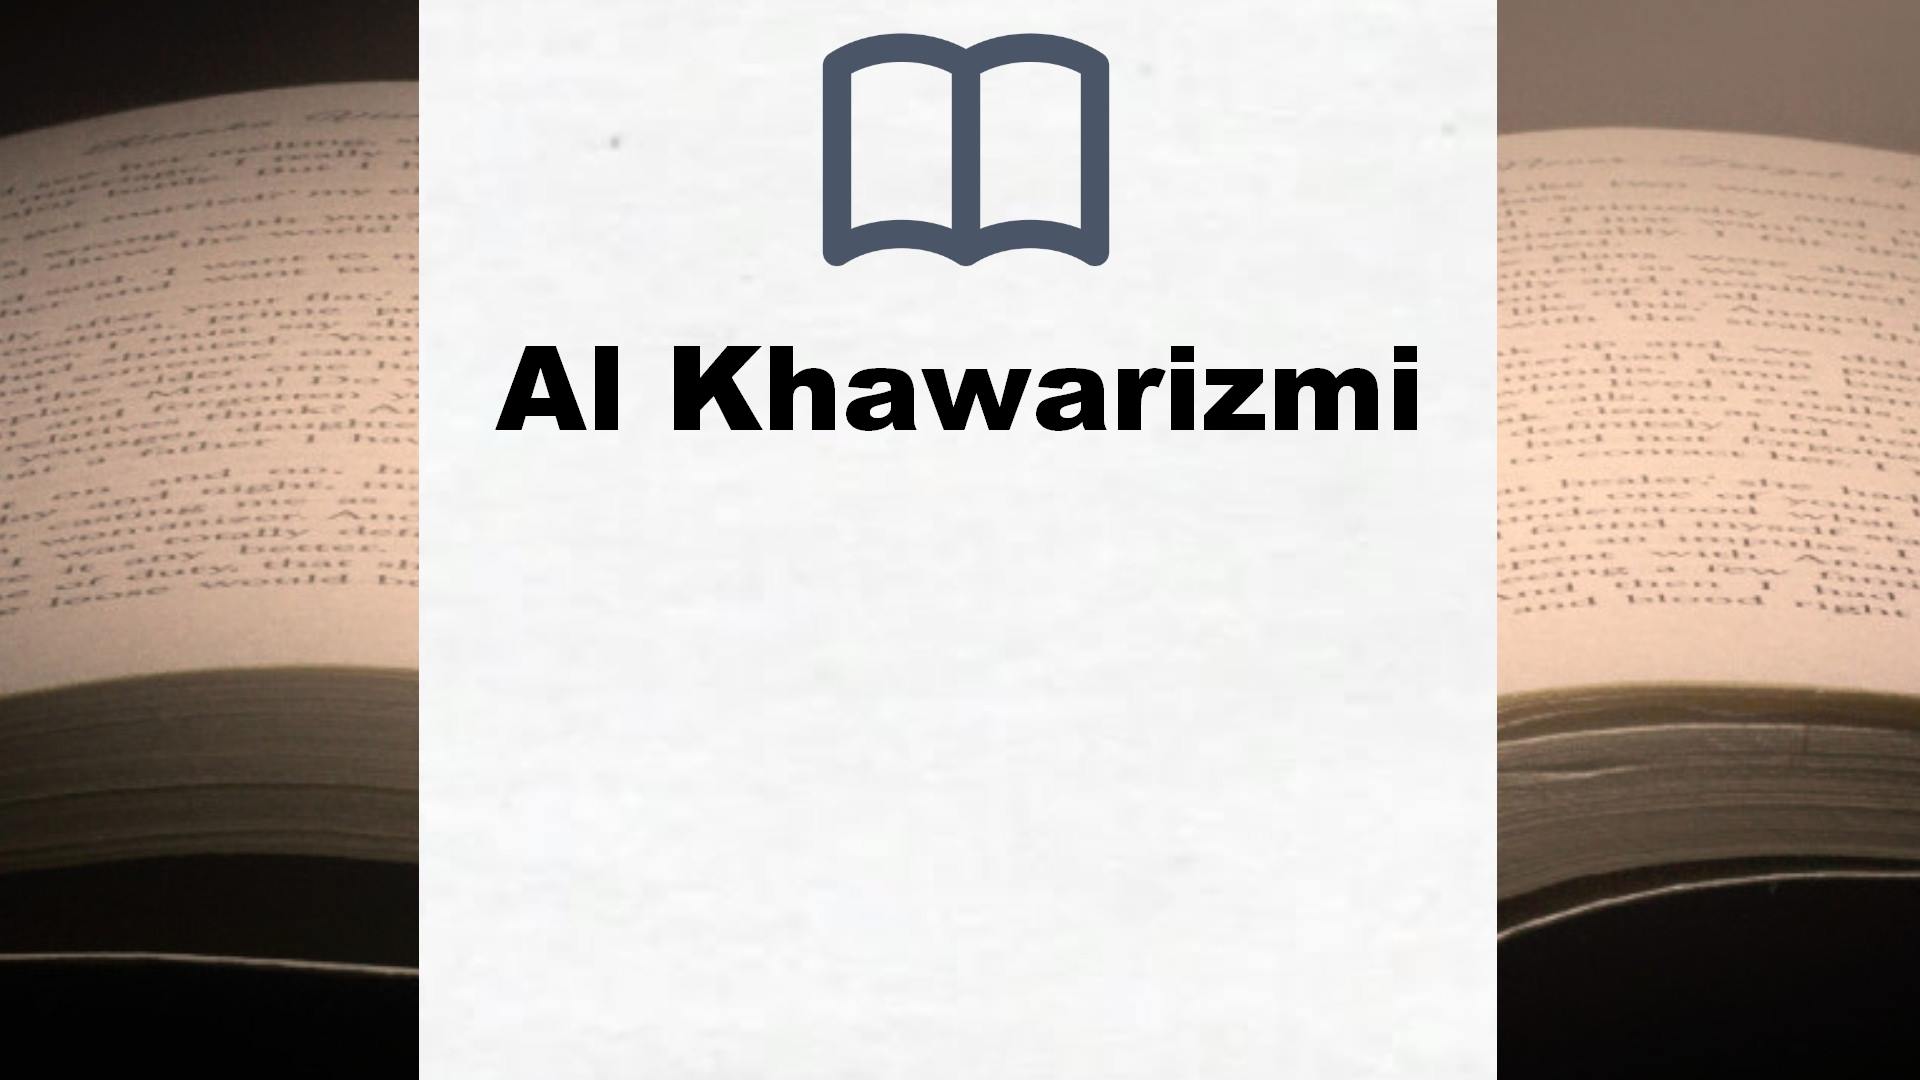 Bücher über Al Khawarizmi